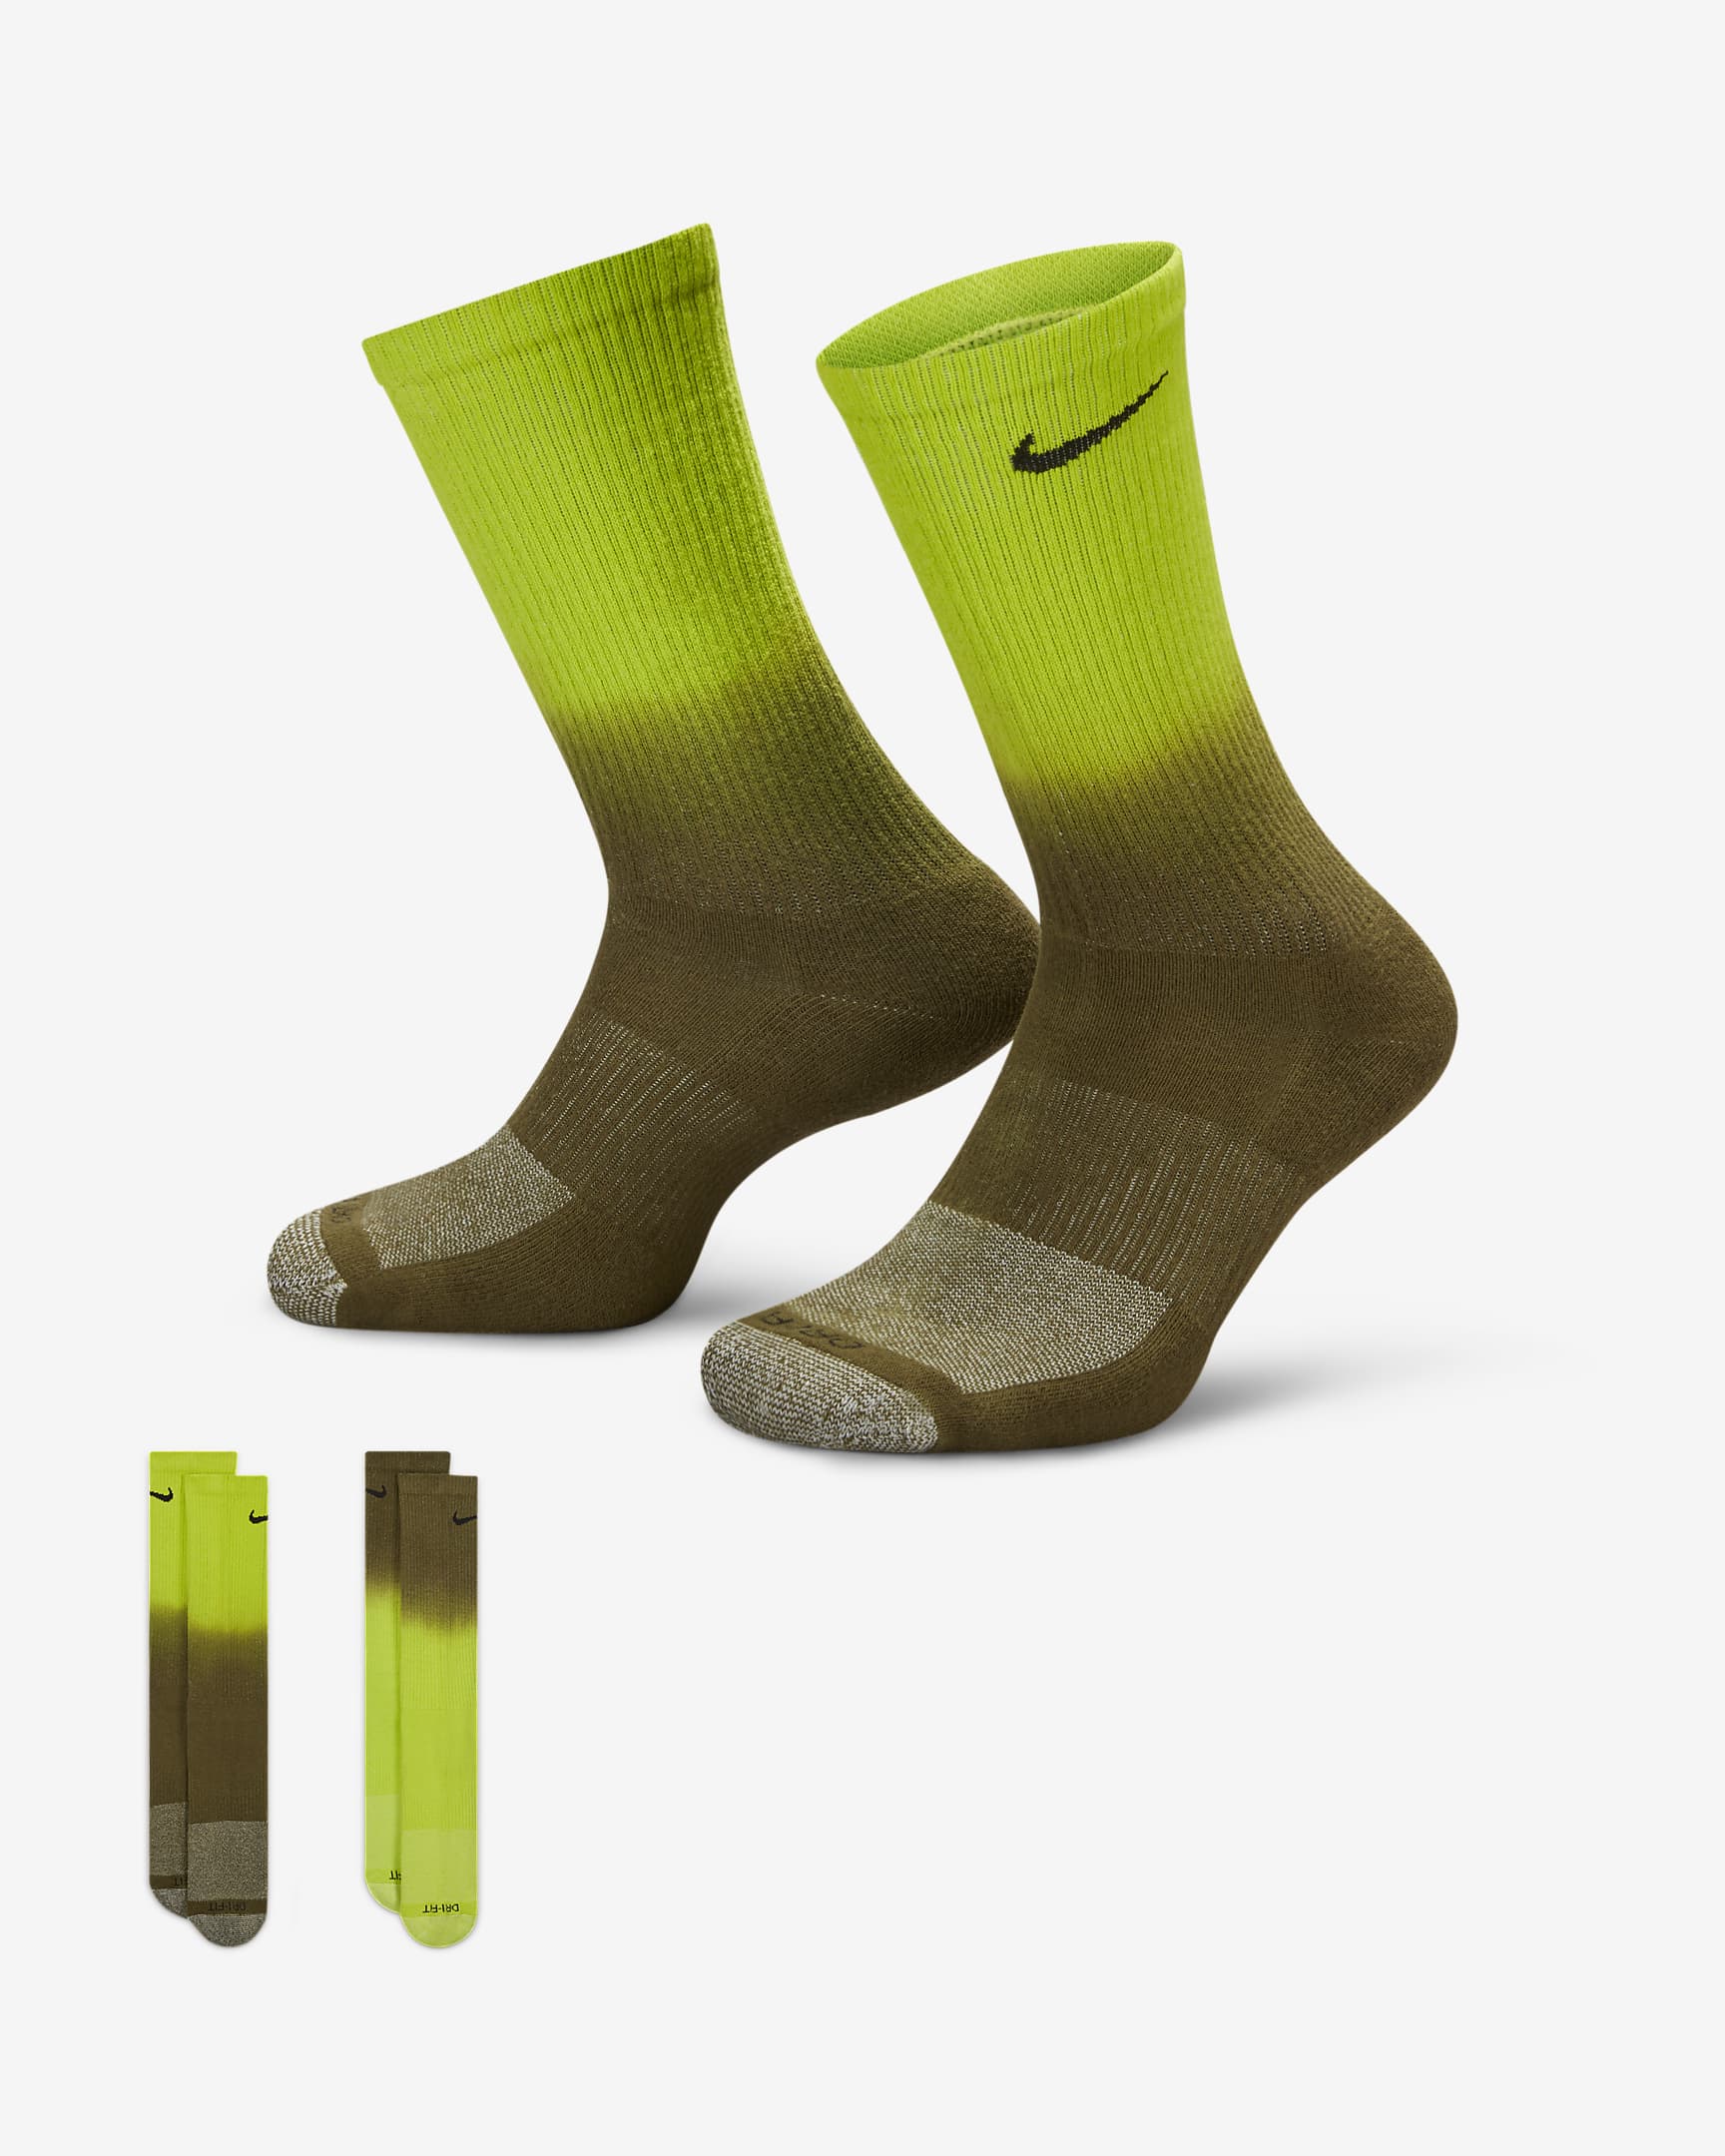 Calcetas acolchadas Nike Everyday Plus (2 pares). Nike.com